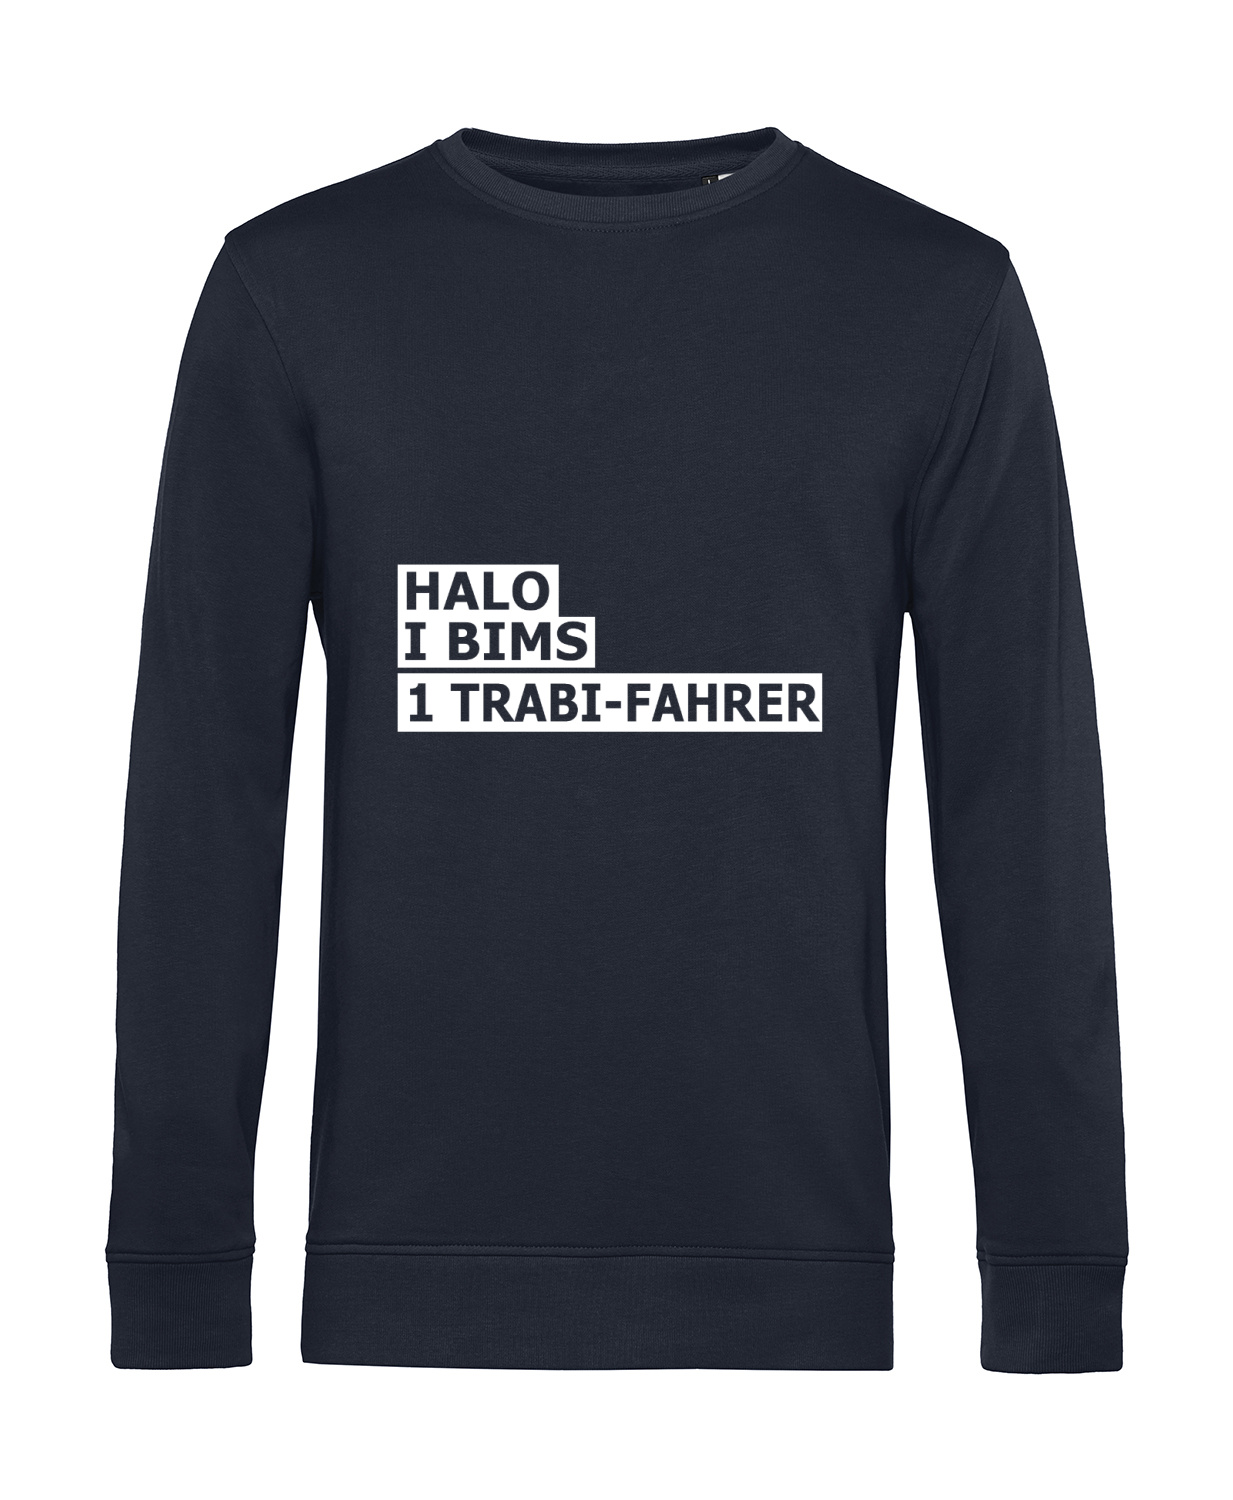 Nachhaltiges Sweatshirt Herren 2Takter - Halo I bims 1 Trabi-Fahrer